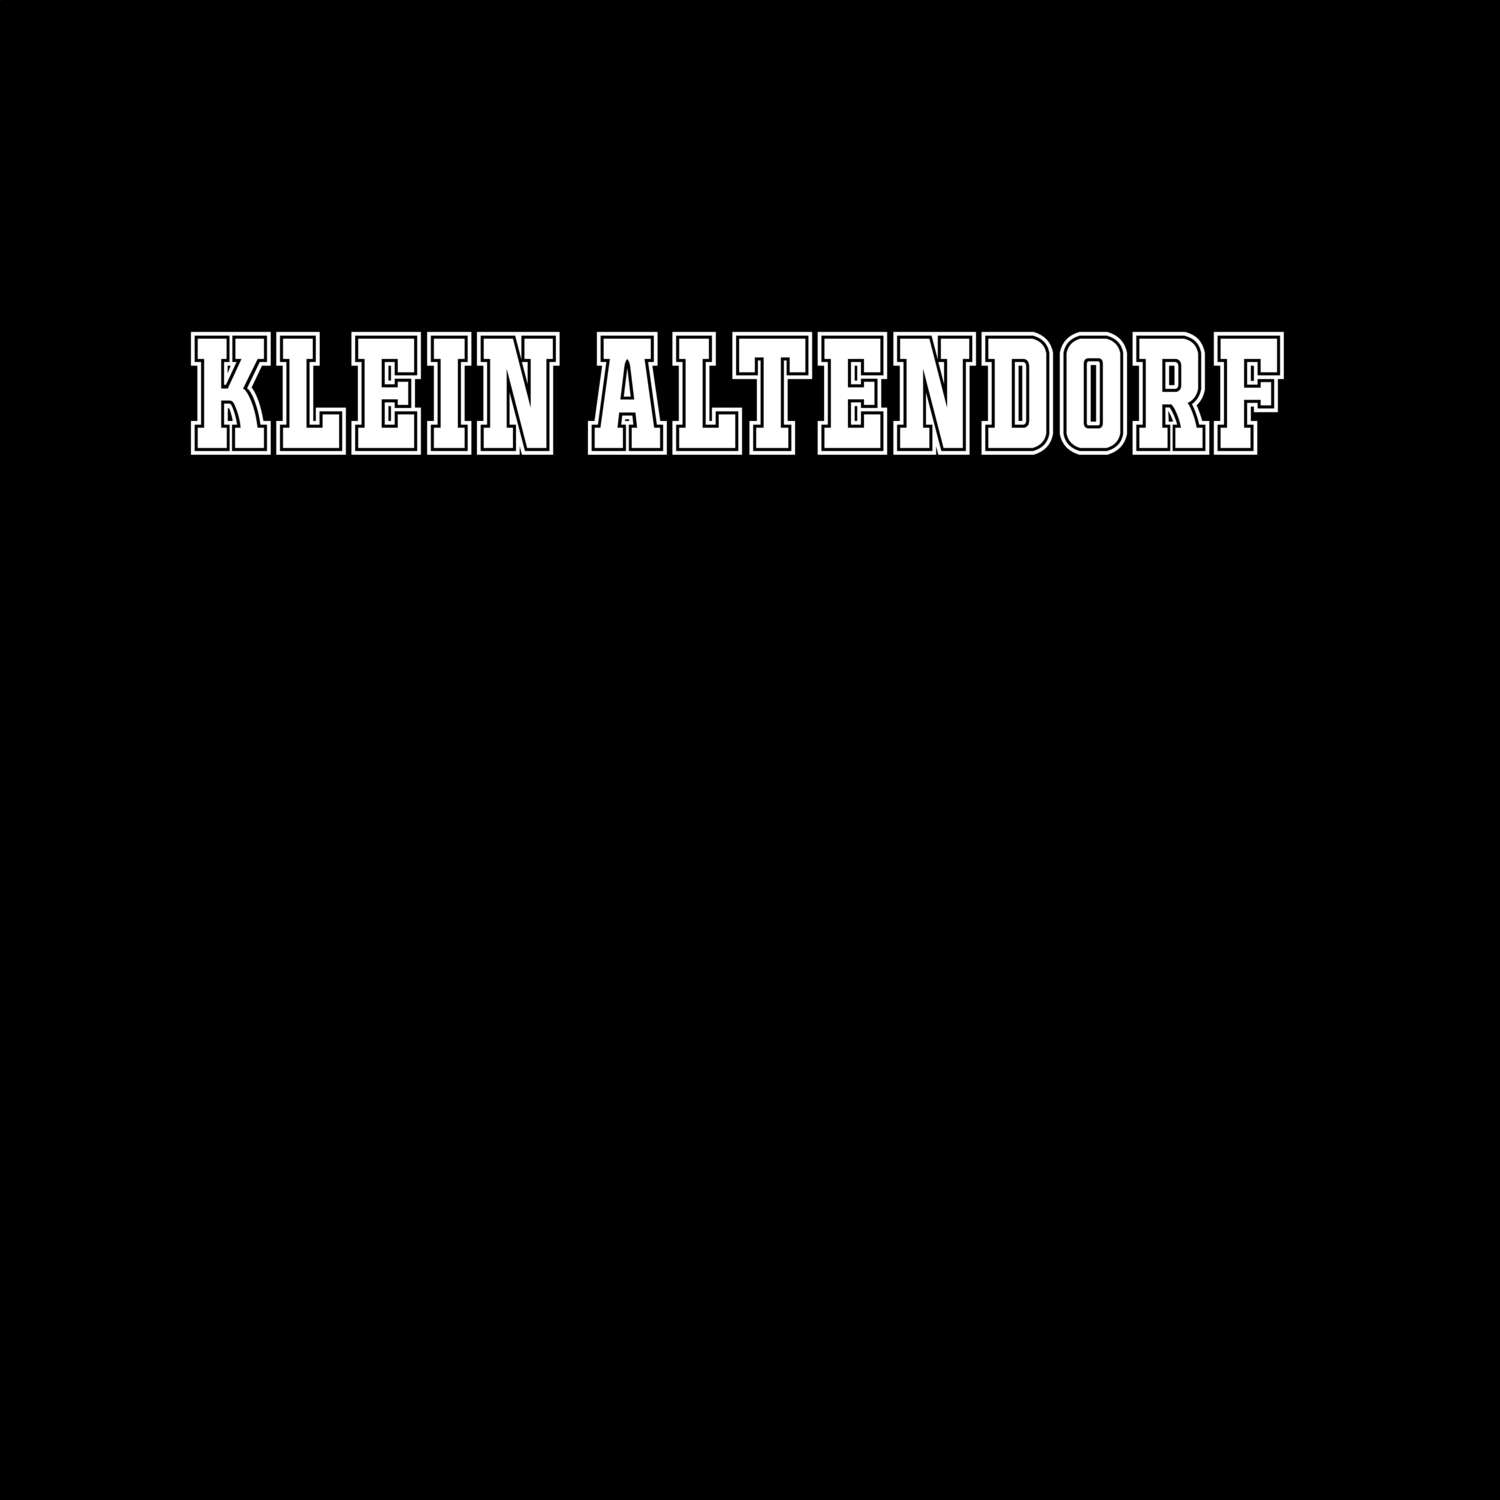 Klein Altendorf T-Shirt »Classic«